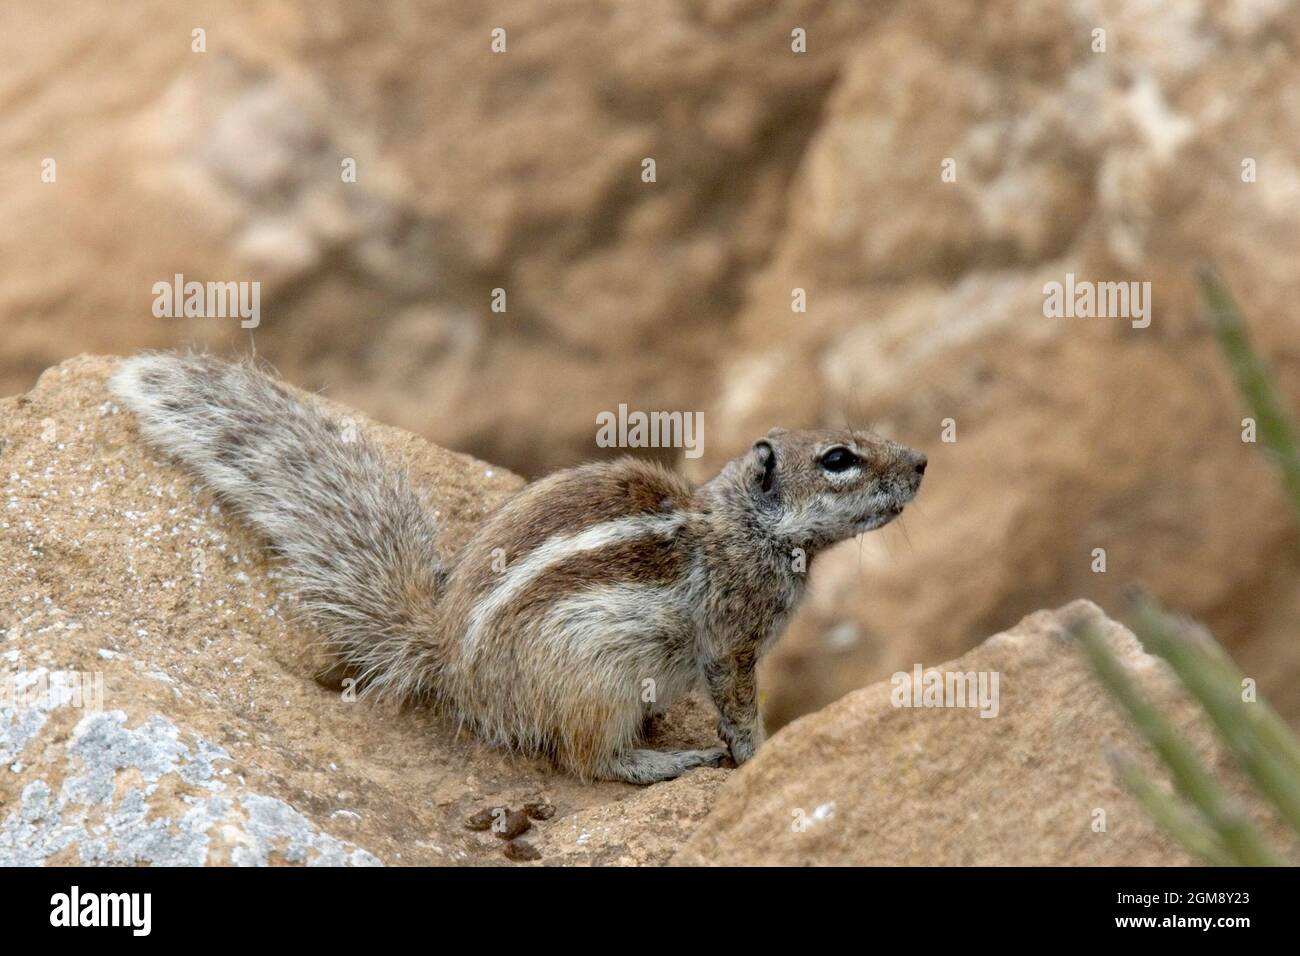 Das Barbery Ground Squirrel (Atlantoxerus getulus), auch bekannt als Gestreiftes oder Marokkanisches Ground Squirrel, ist in Marokko endemisch. Dieses hier wurde nea fotografiert Stockfoto